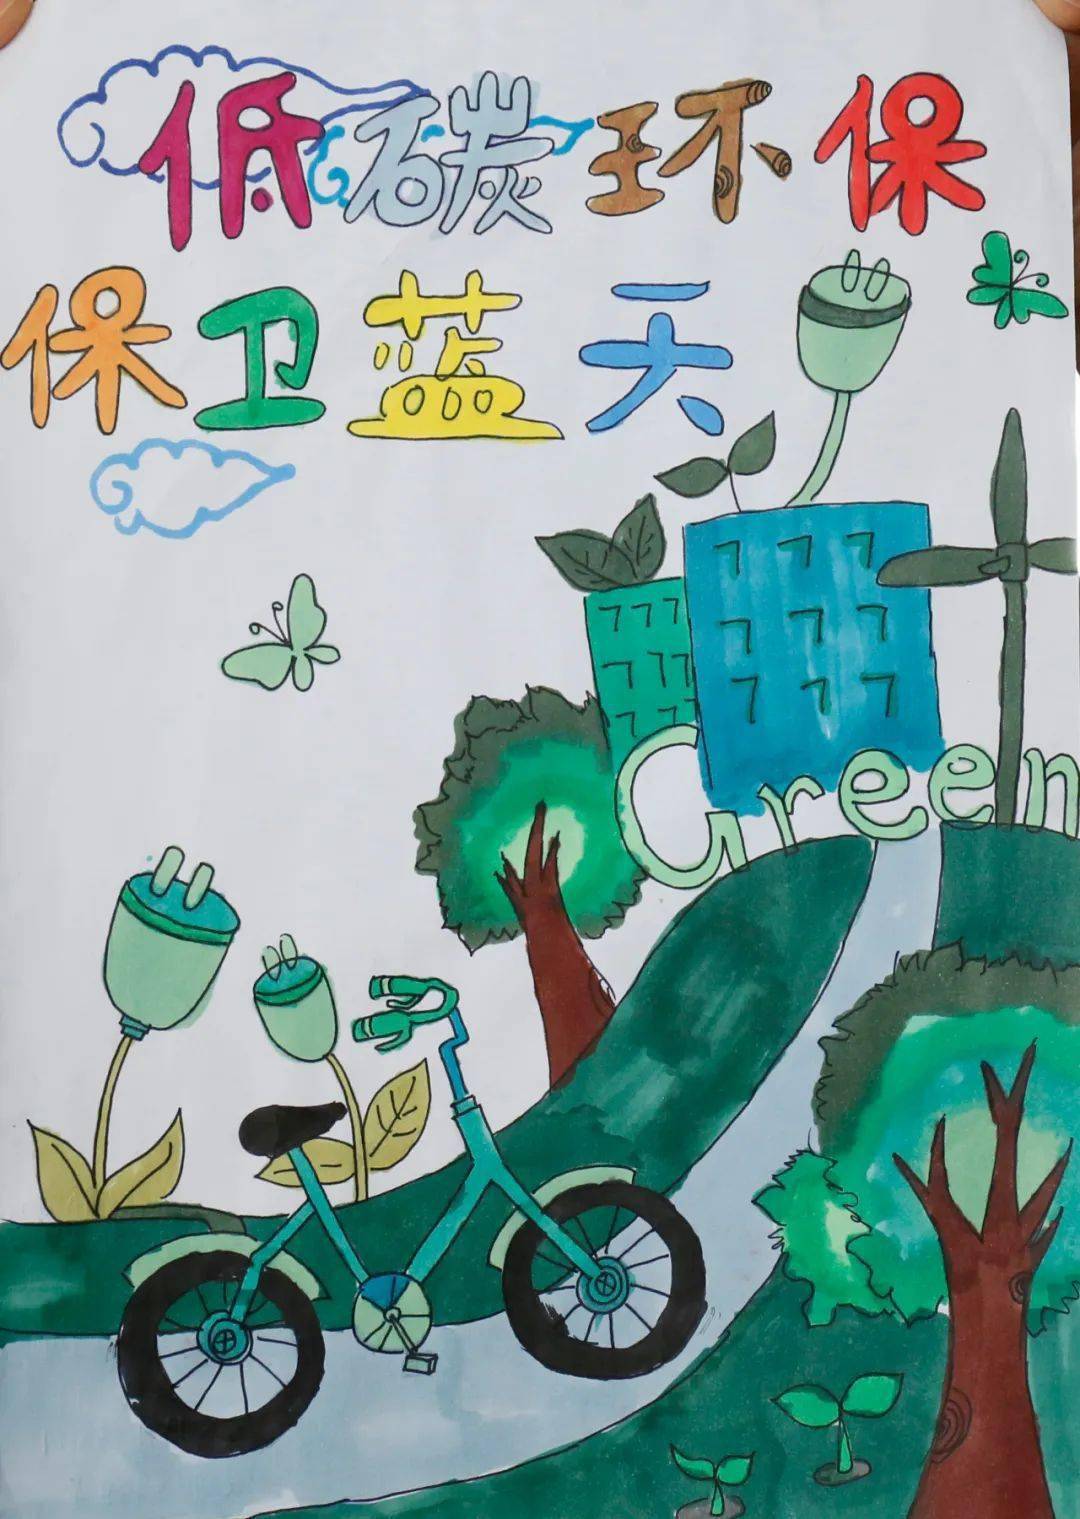 许如楠 12岁 西宁市城西区行知小学 作品描述:低碳环保,保卫蓝天